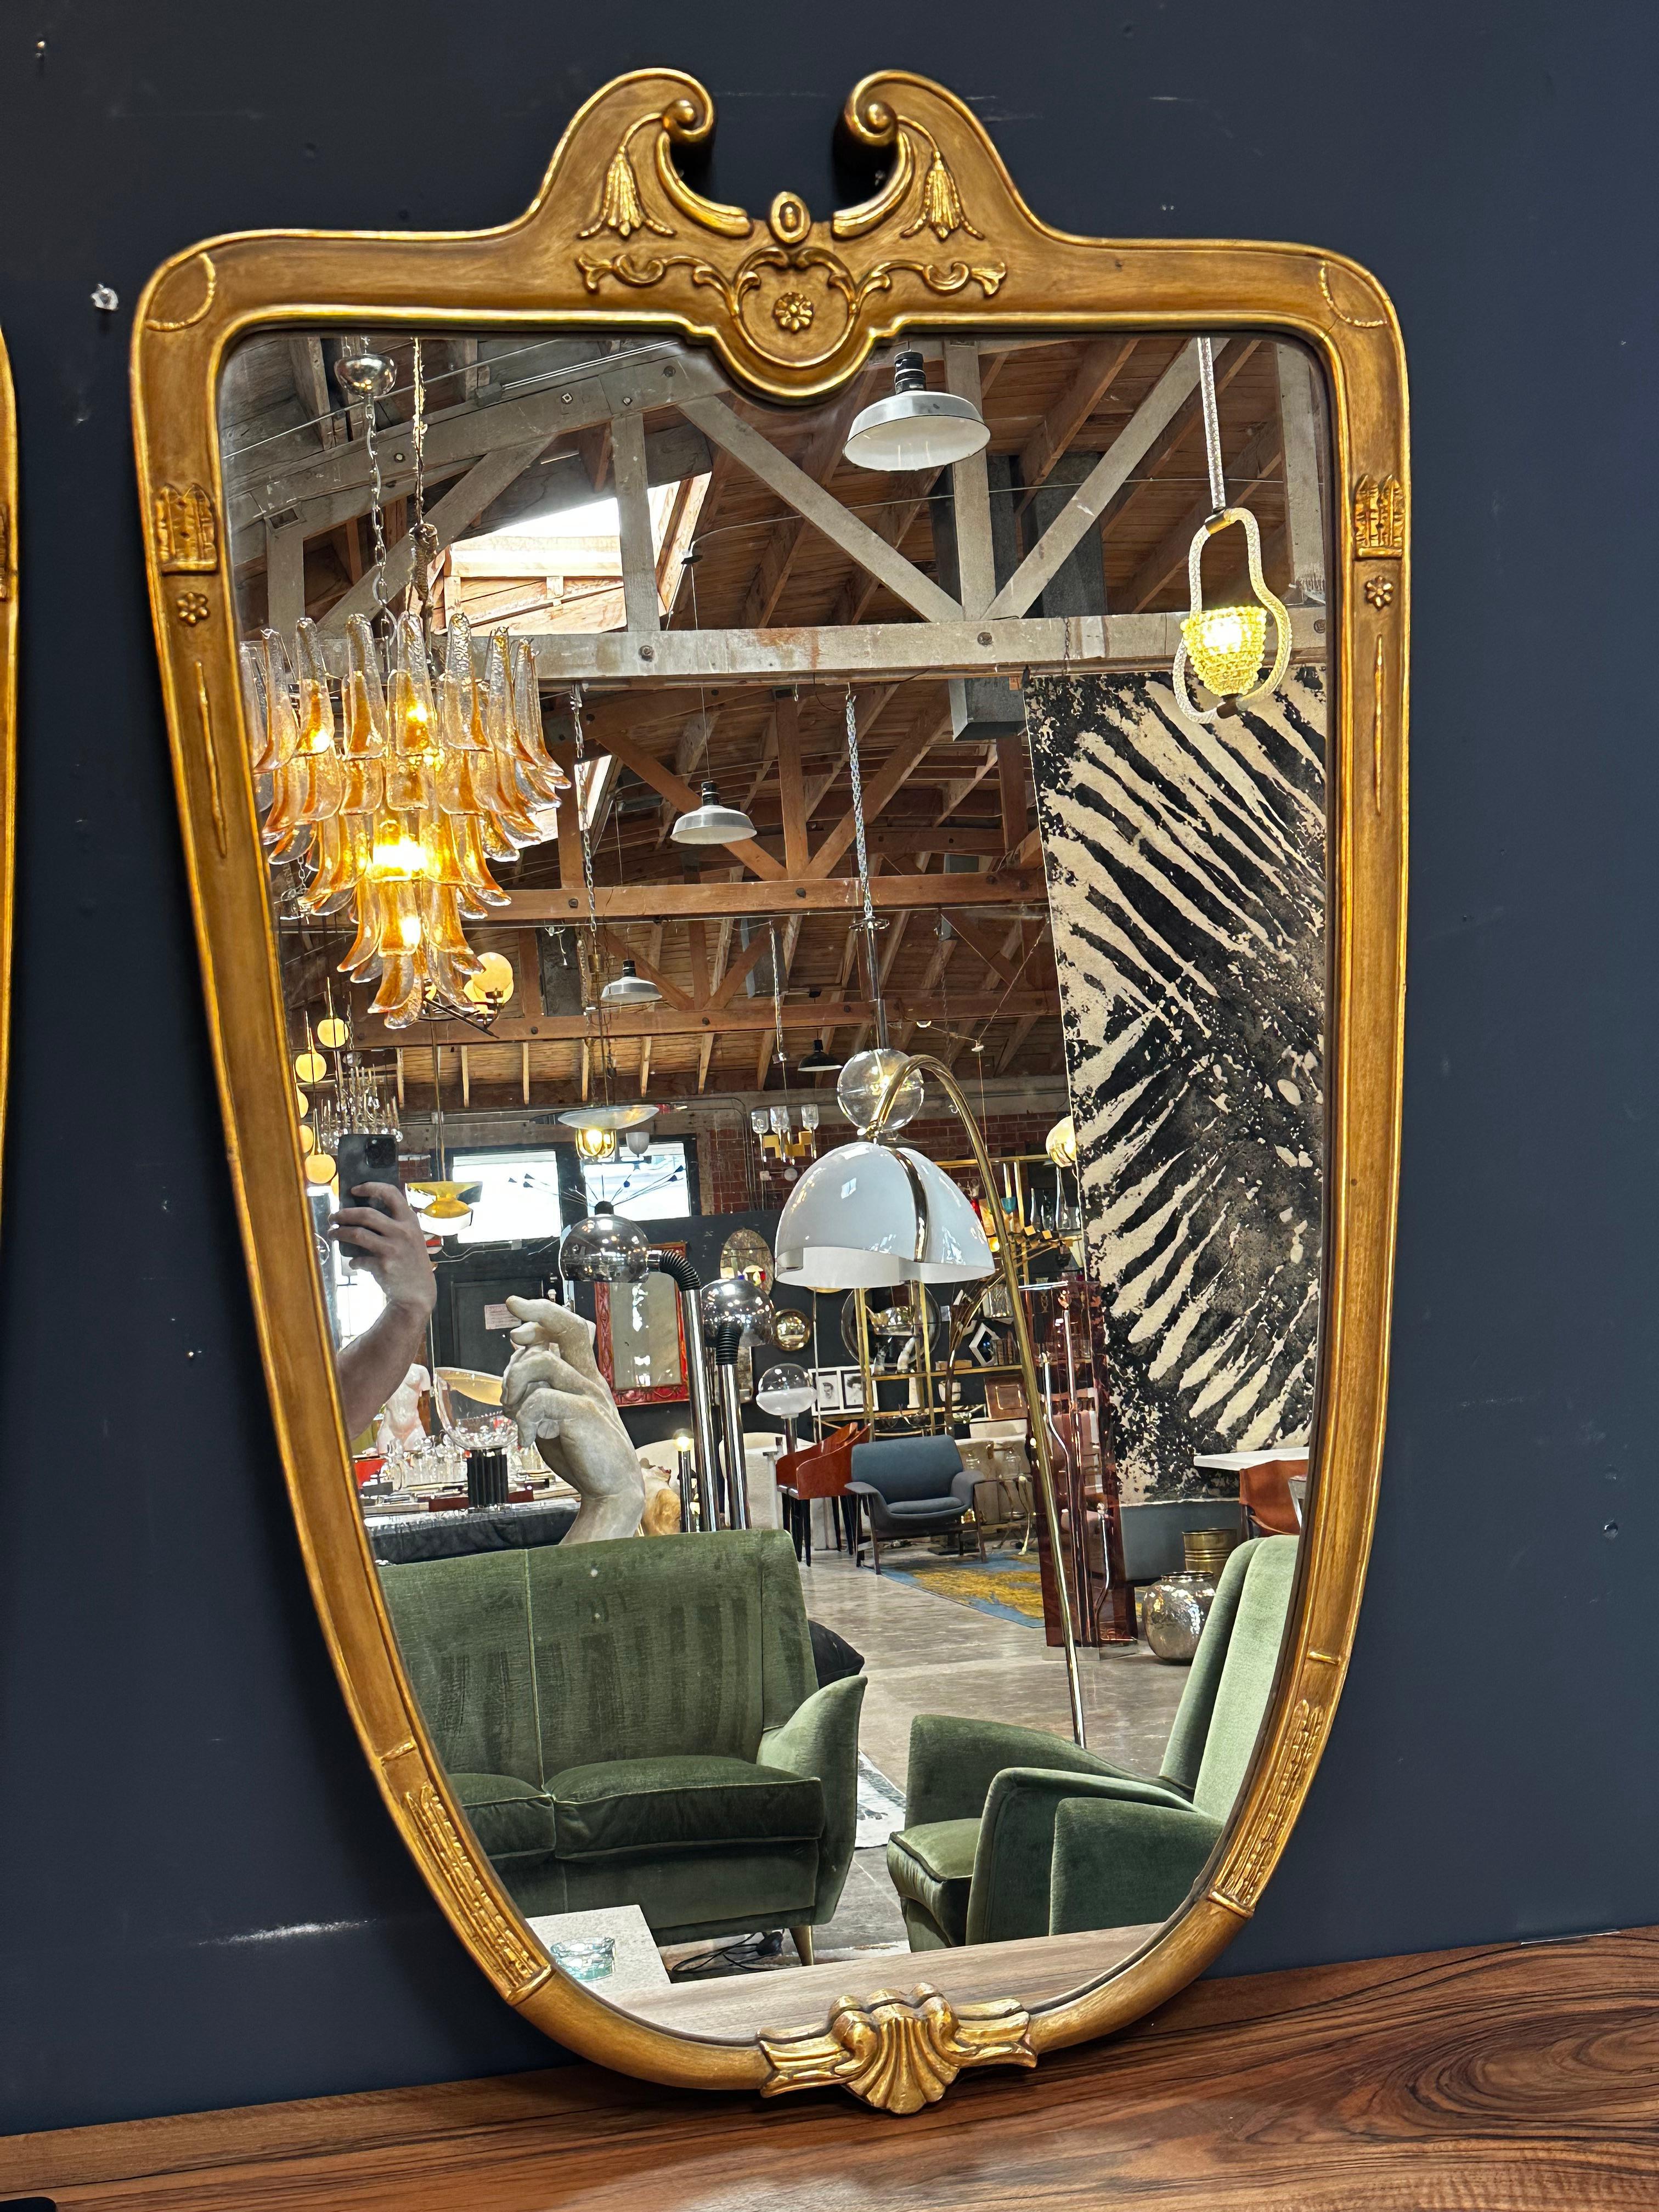 Schöner übergroßer italienischer venezianischer Spiegel mit einem goldenen Holzrahmen mit originaler Patina.
Verfügbar 2.